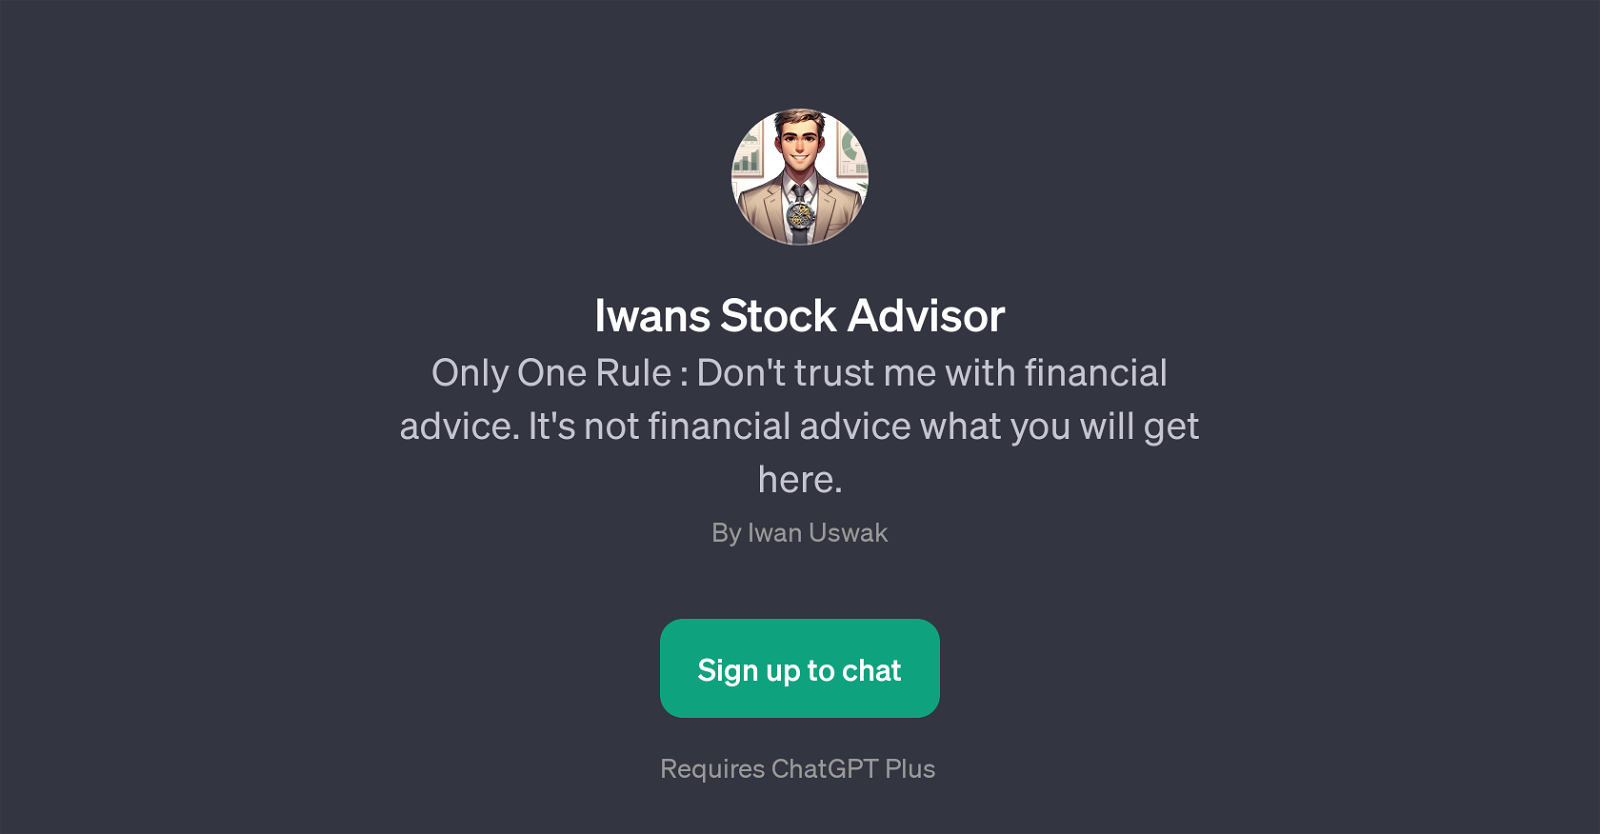 Iwans Stock Advisor website